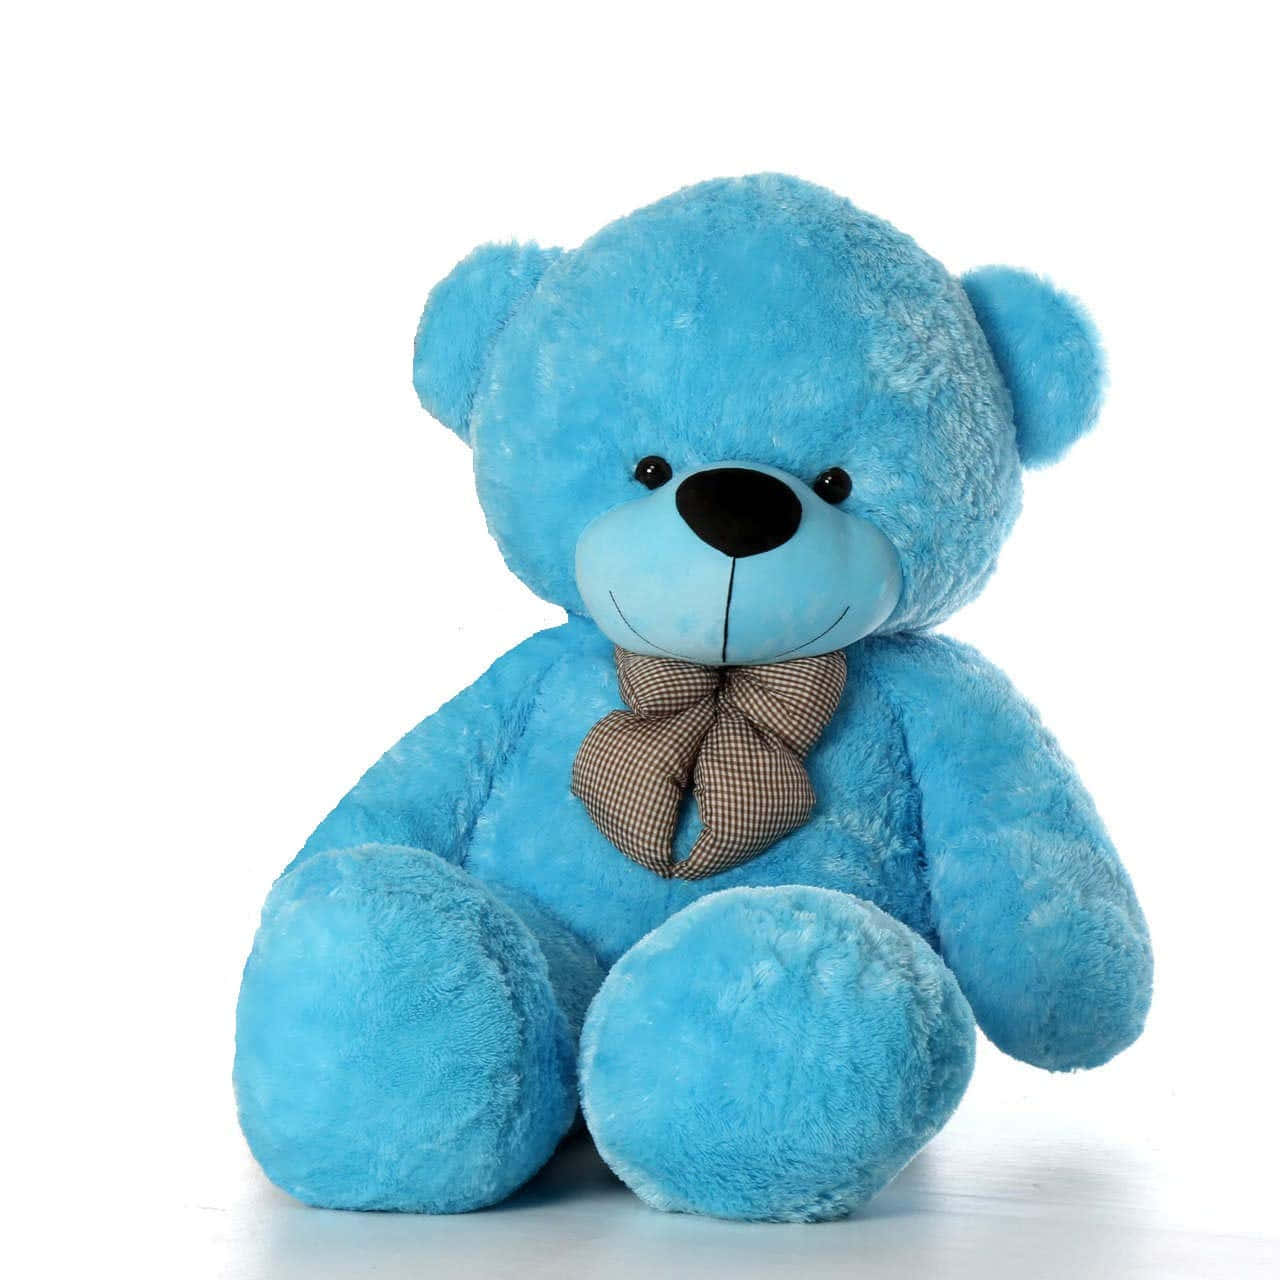 Findensie Einen Kuscheligen Und Tröstlichen Begleiter Mit Diesem Geliebten Teddybär!